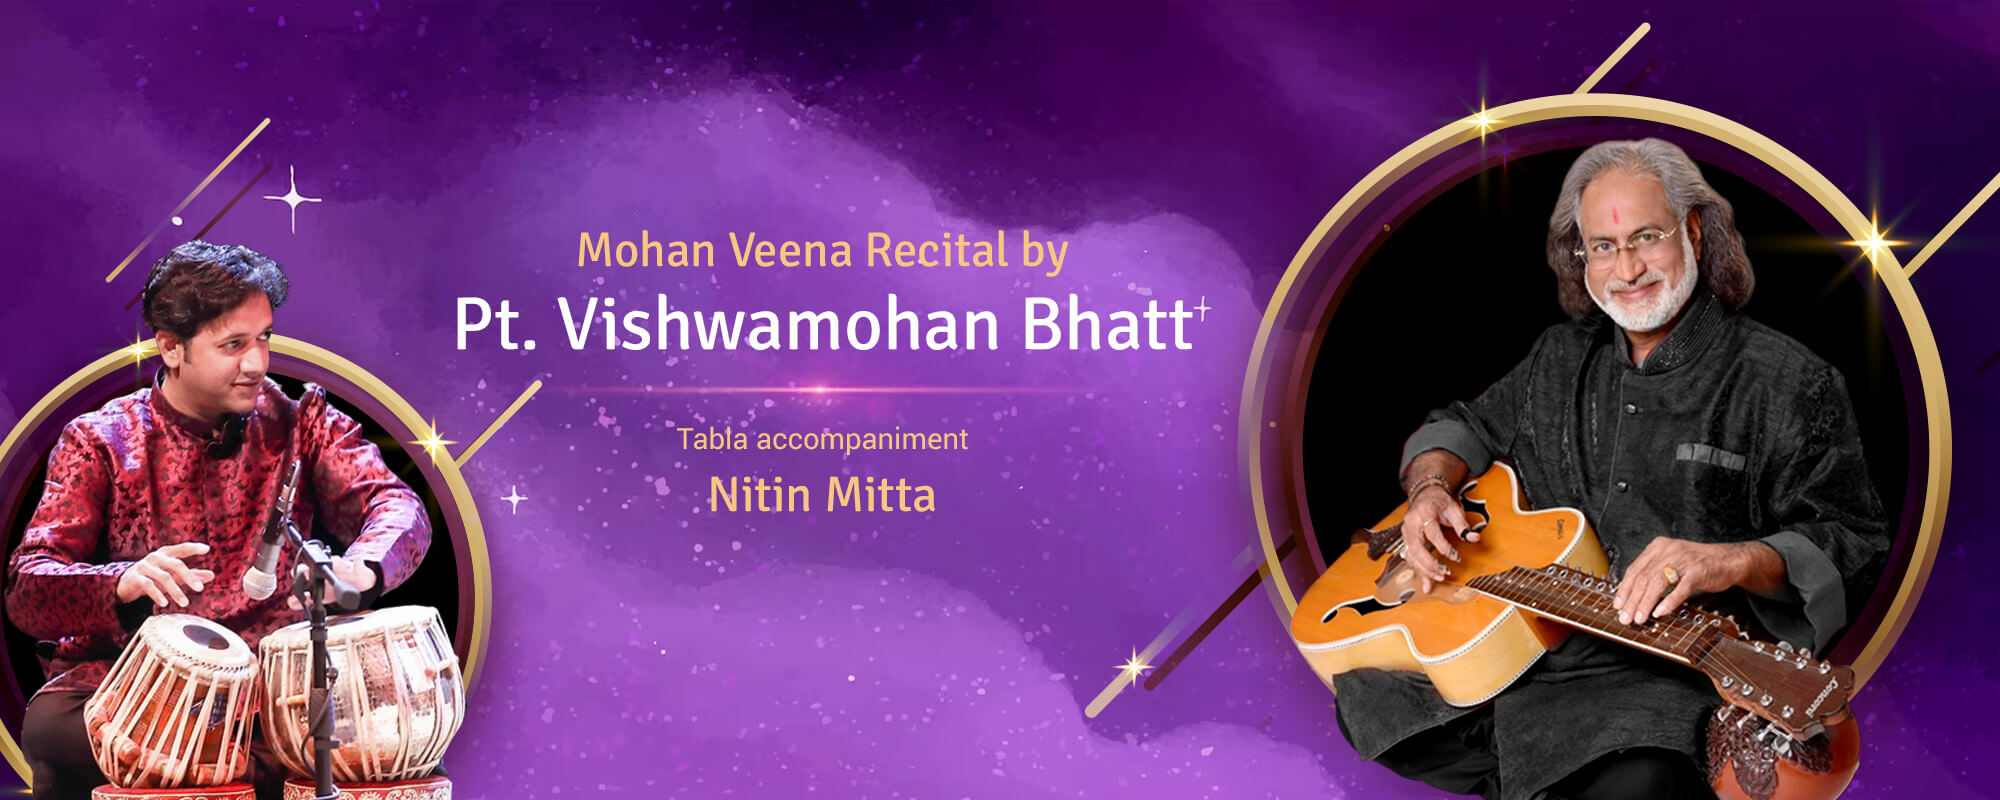 pandit Vishwamohan Bhatt concert on MohanVeena